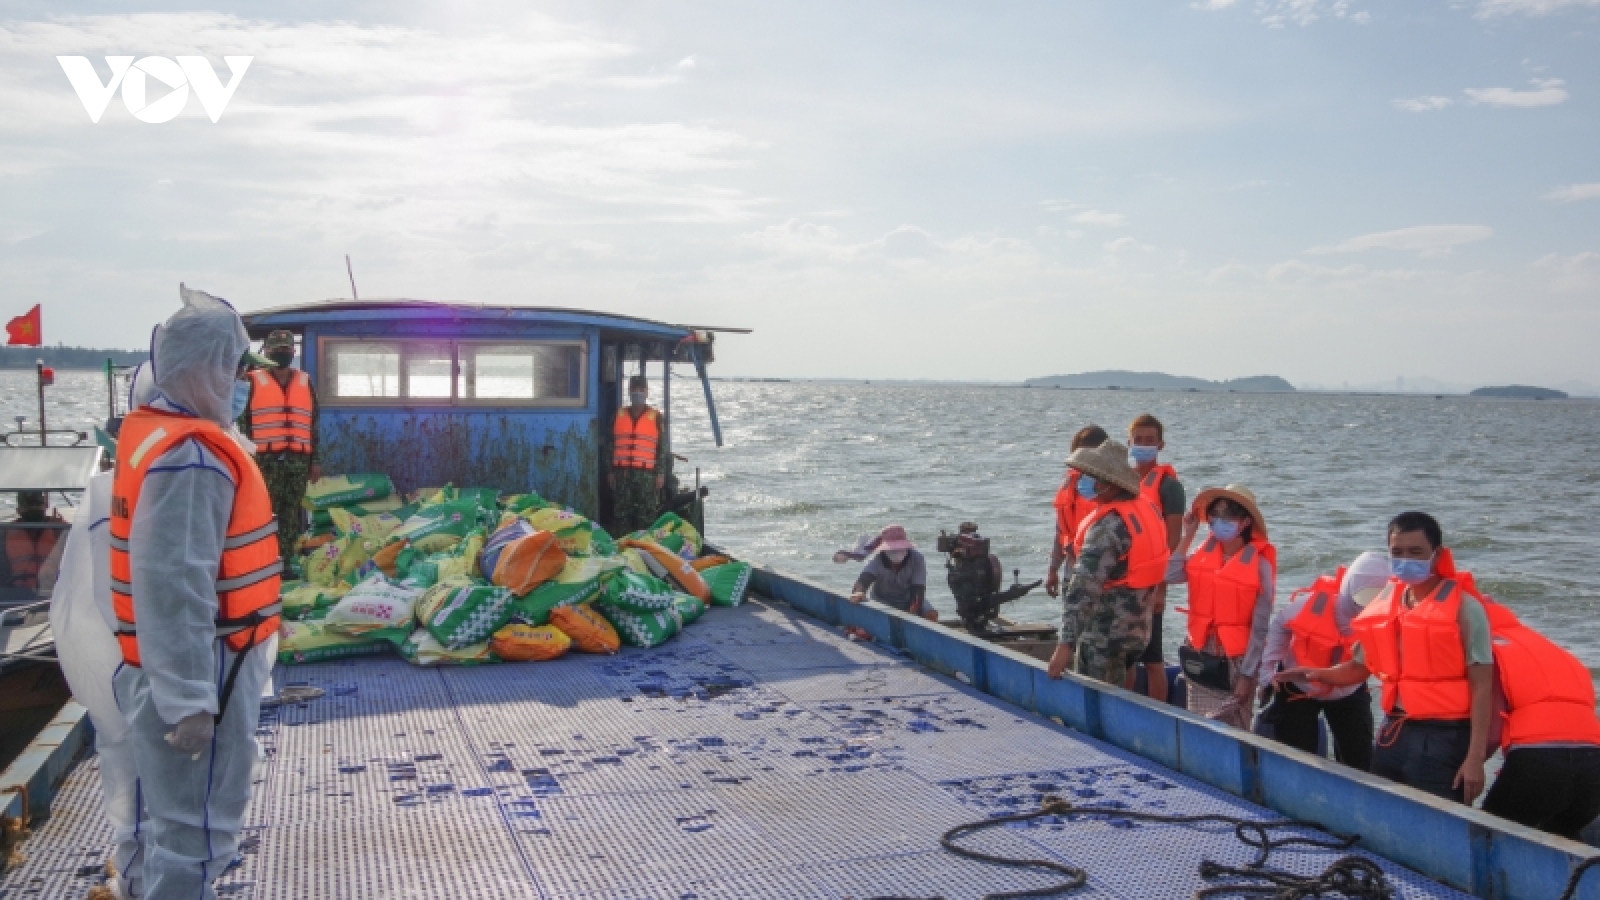 Quảng Ninh bàn giao phương tiện bị trôi trên biển cho ngư dân Trung Quốc